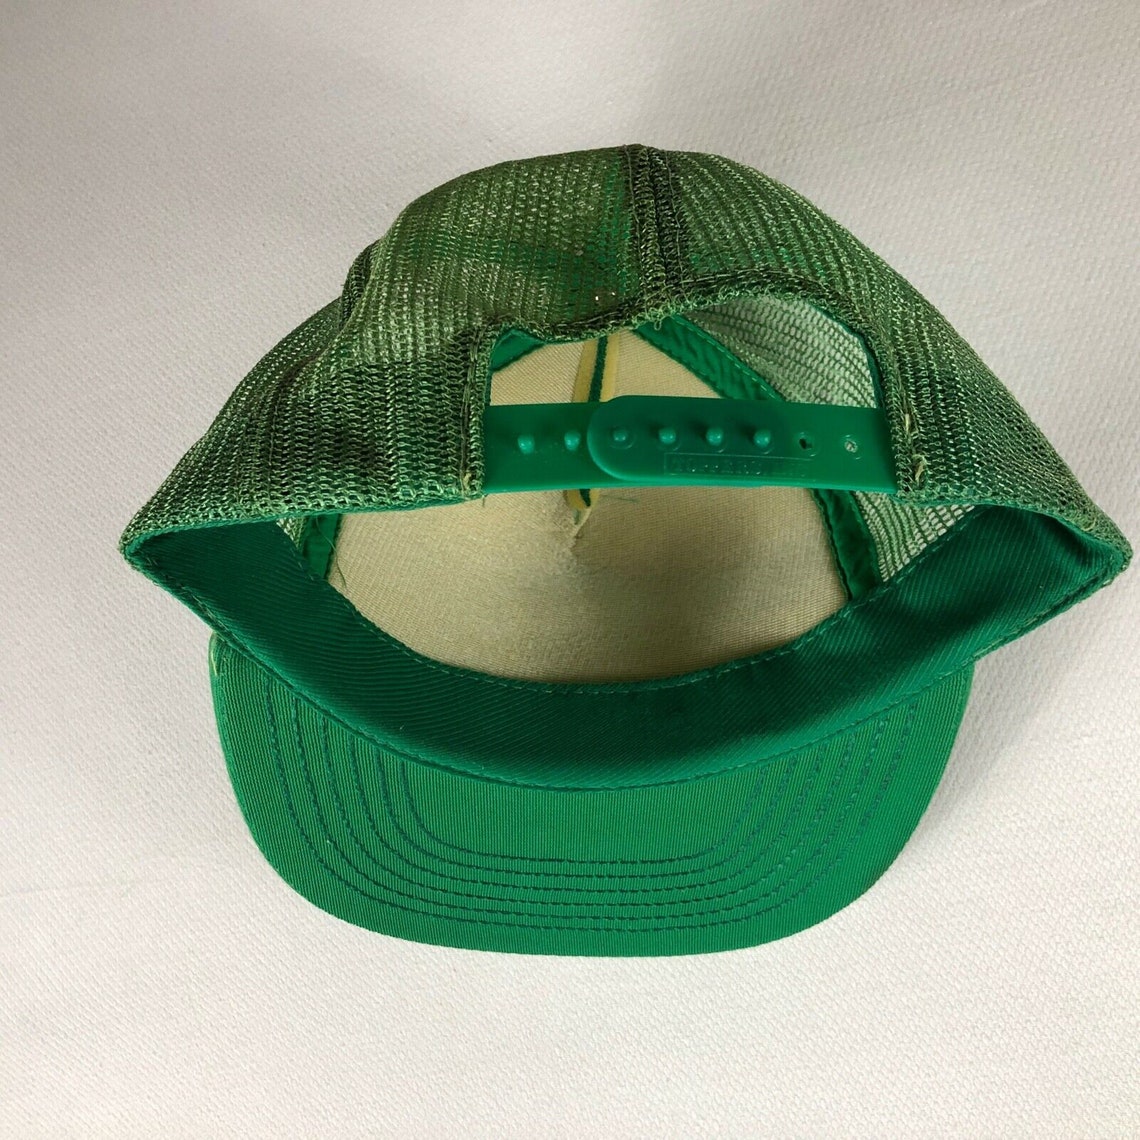 Turf Lounge Snapback Hat Foam Front Cap Trucker Green White - Etsy